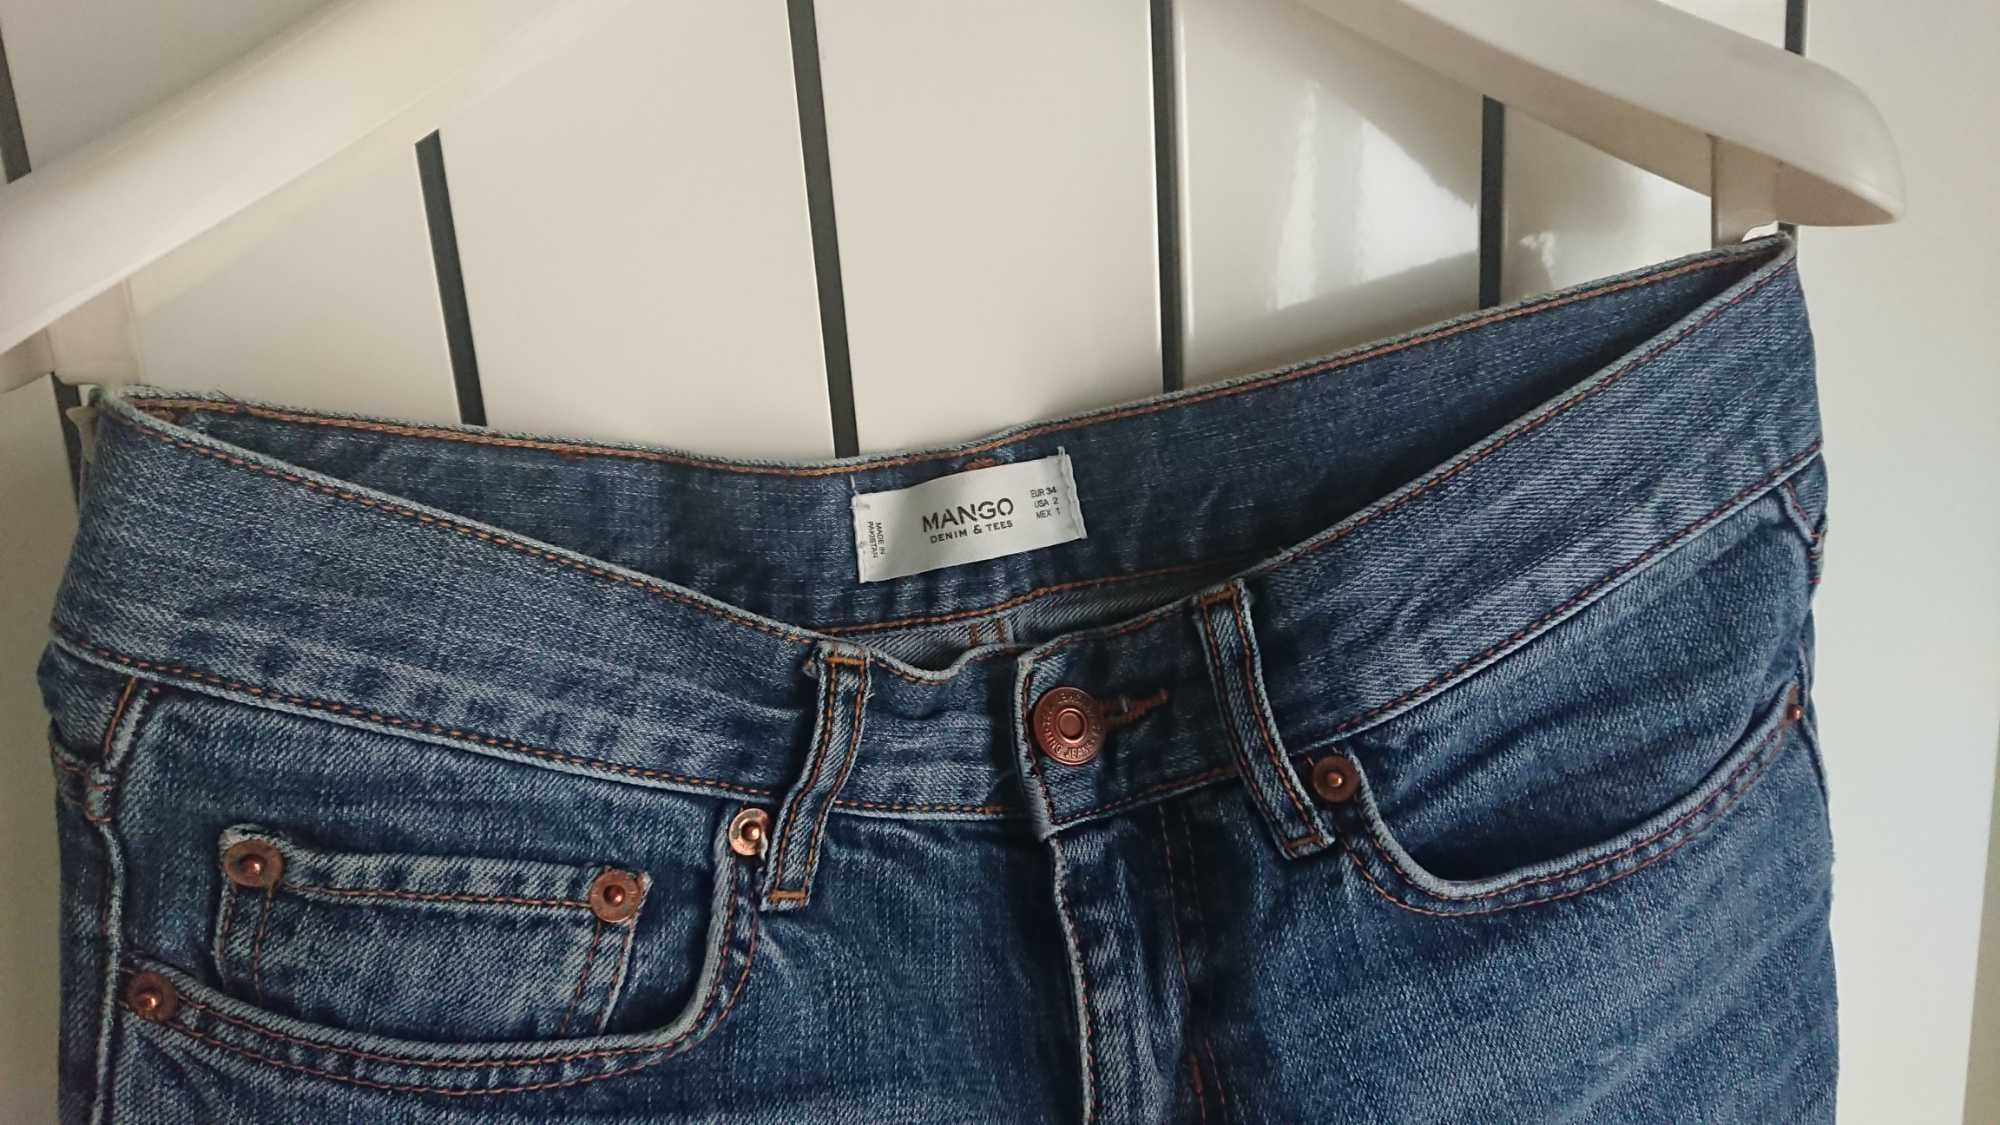 Jeans regular fit, marime XS/34, marca MANGO, culoare albastru